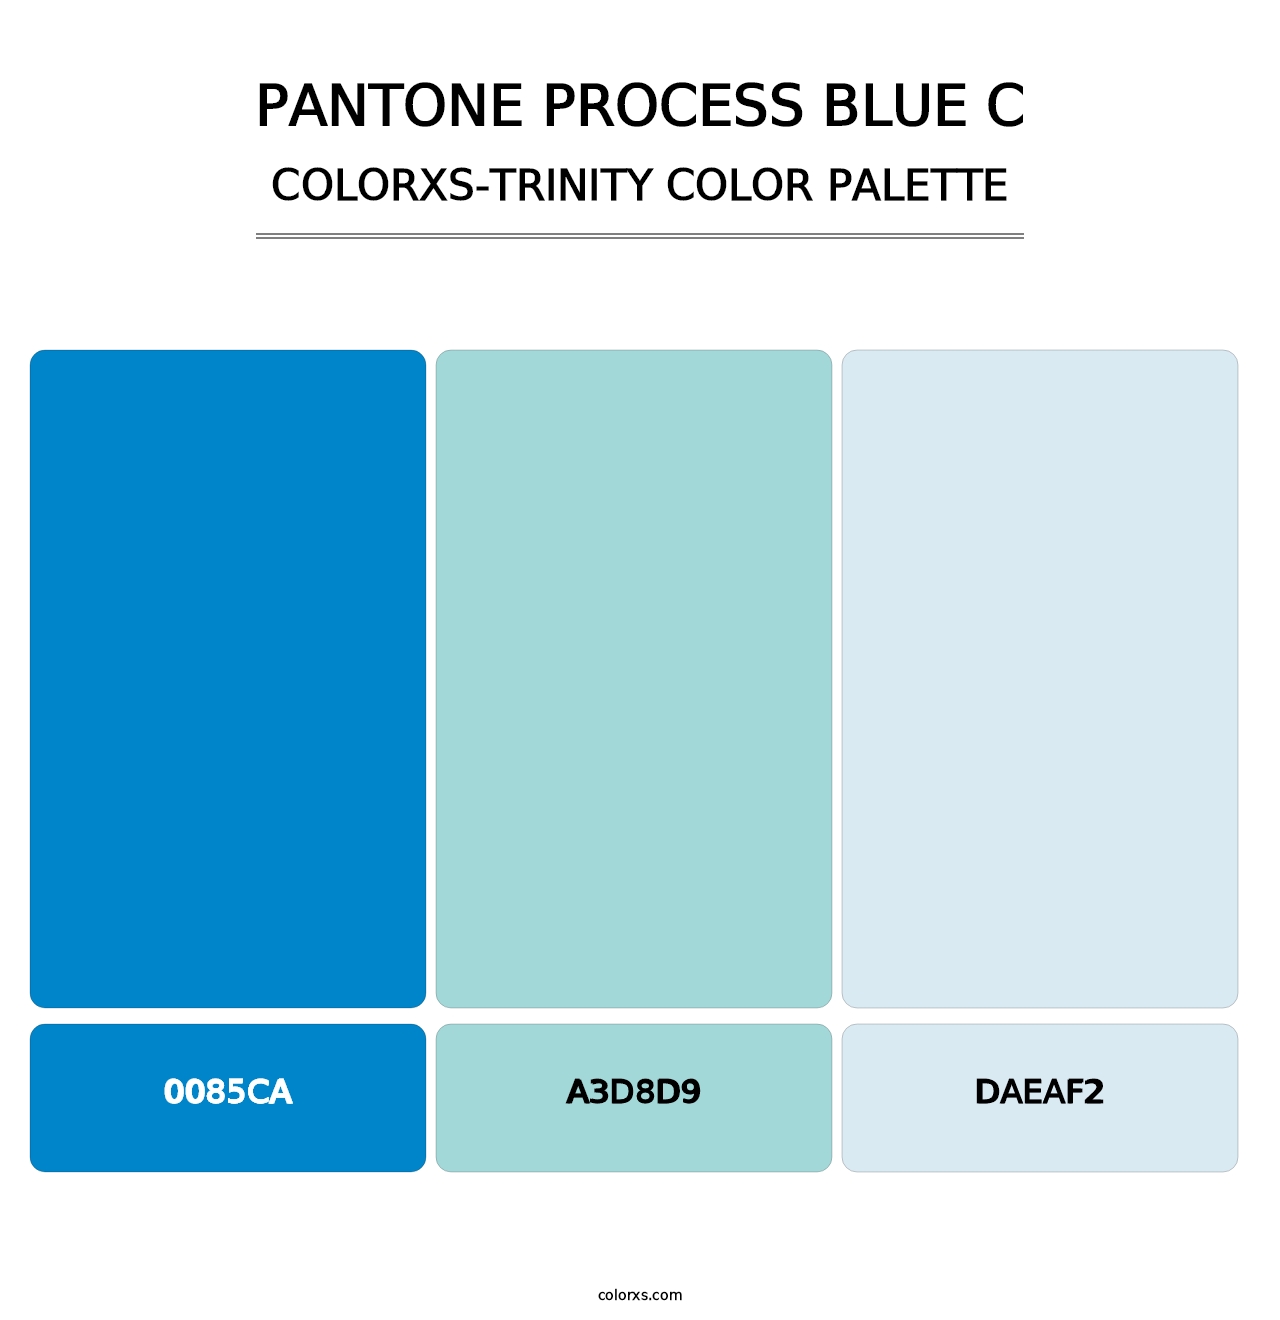 PANTONE Process Blue C - Colorxs Trinity Palette